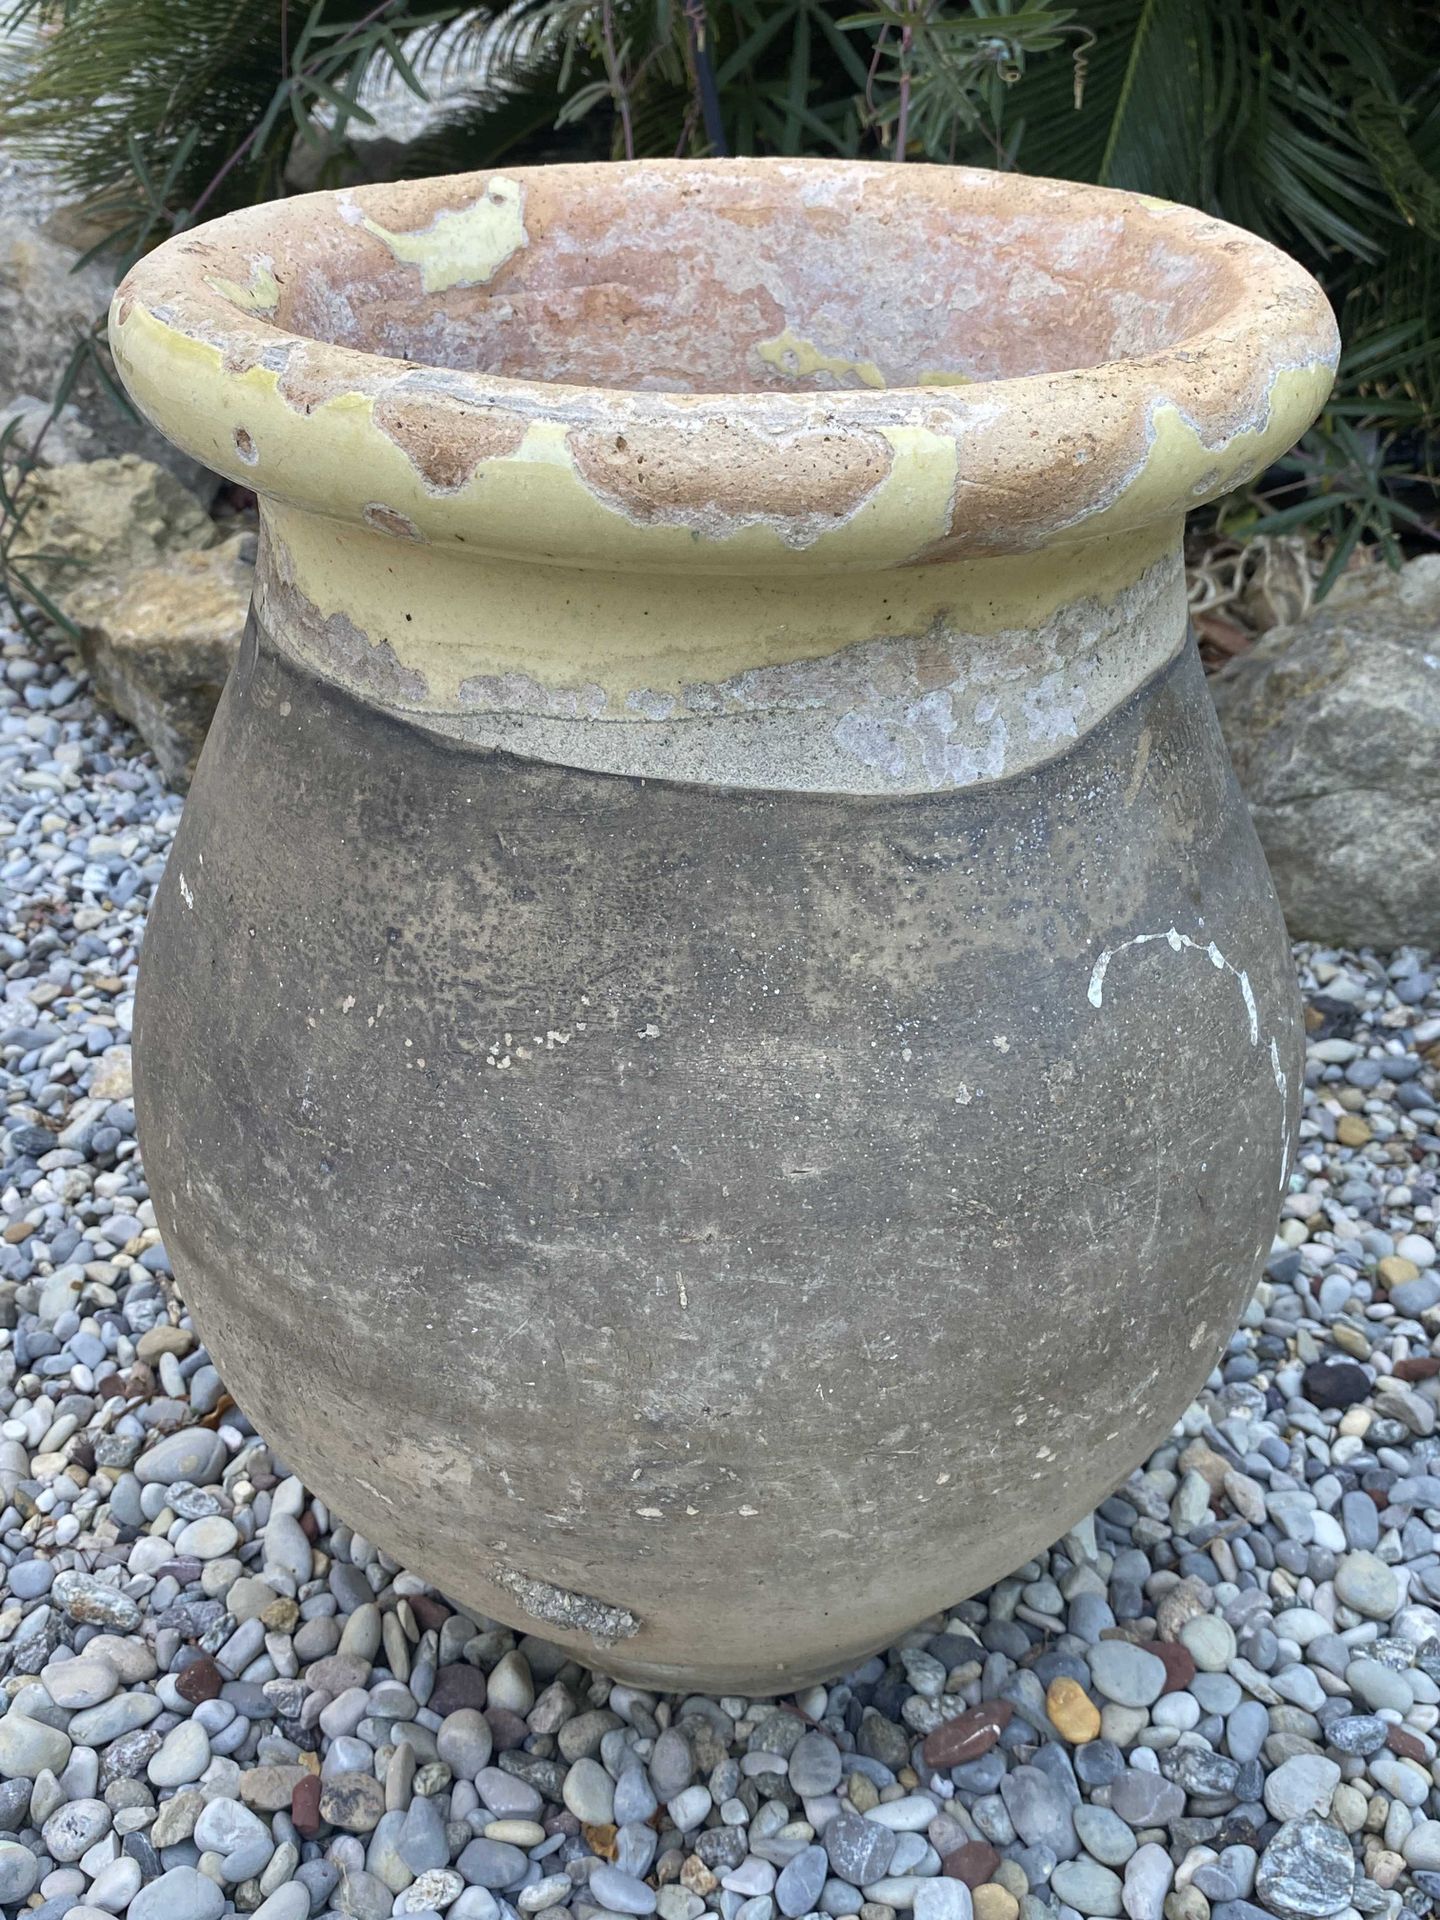 Null 来自Biot的陶器罐子

签有 "Pellegrin "印章

高：43厘米（黄色釉面颈部）。

* 按指定的方式出售